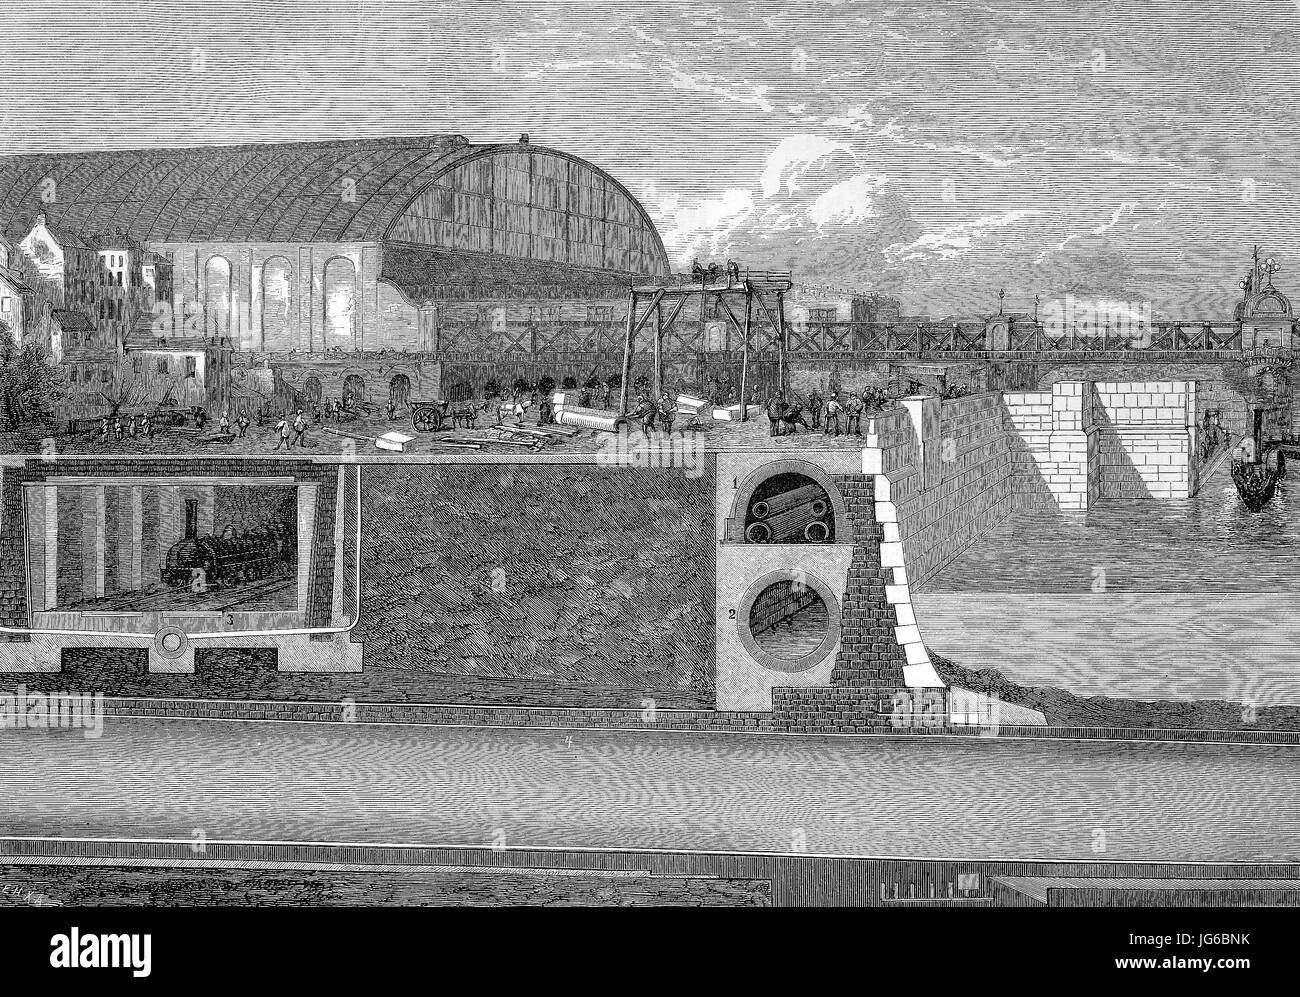 Amélioration numérique :, le barrage de la Tamise, Londres, Angleterre, et le métro avec gas pipeline, pipeline, l'eau du canal de télégraphe, cloaque, métro et train pneumatique, illustration du 19ème siècle Banque D'Images